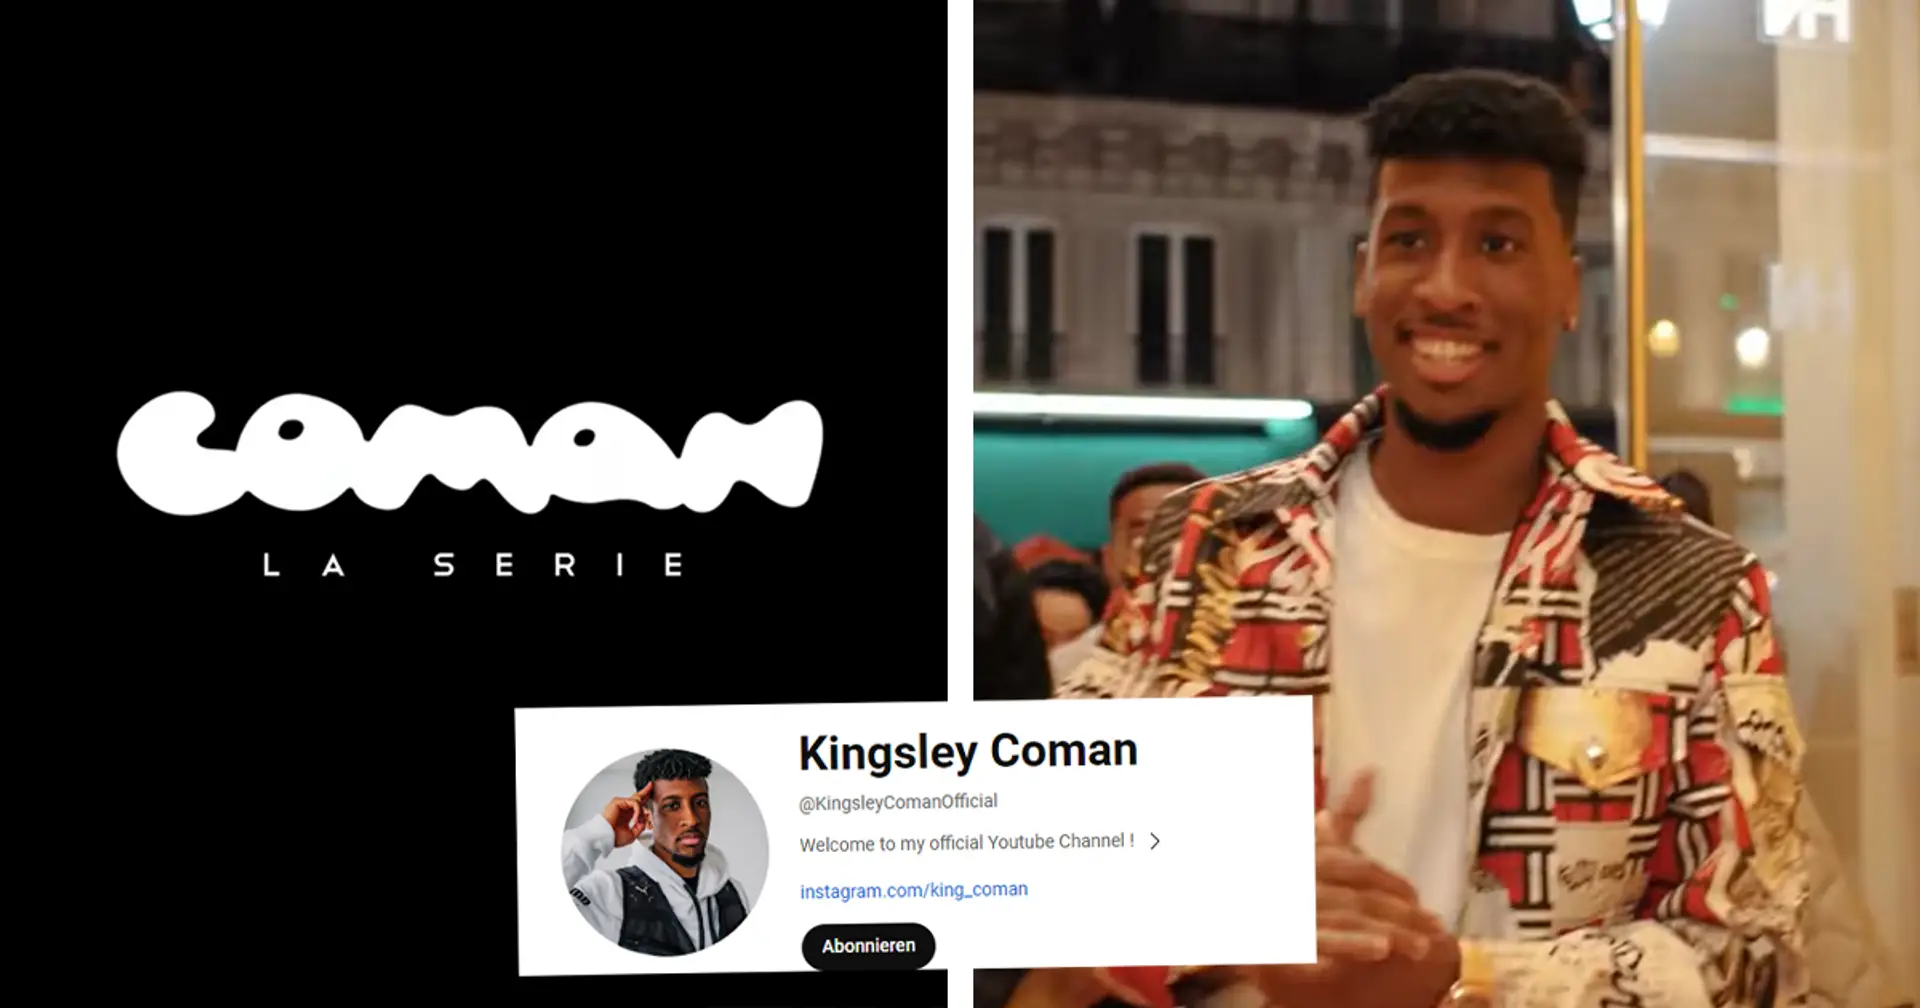 Wusstet ihr, dass Kingsley Coman einen YouTube-Kanal hat? Viele von euch haben wohl mehr Followers als Bayern-Star